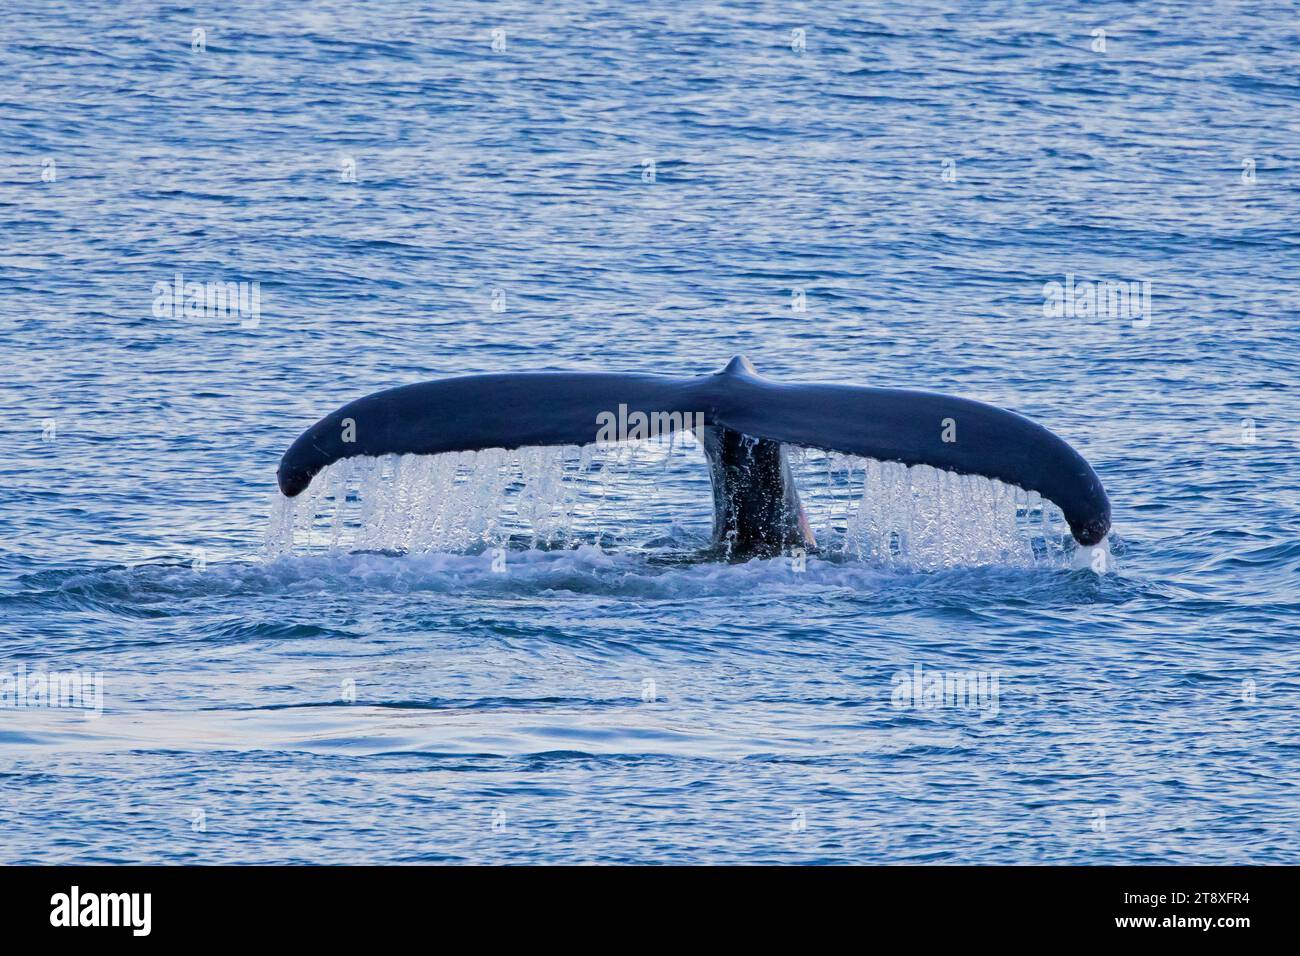 Baleine à bosse (Megaptera novaeangliae) levant ses fards de queue pour plonger dans l'océan Arctique pour se nourrir, Spitsbergen / Svalbard Banque D'Images